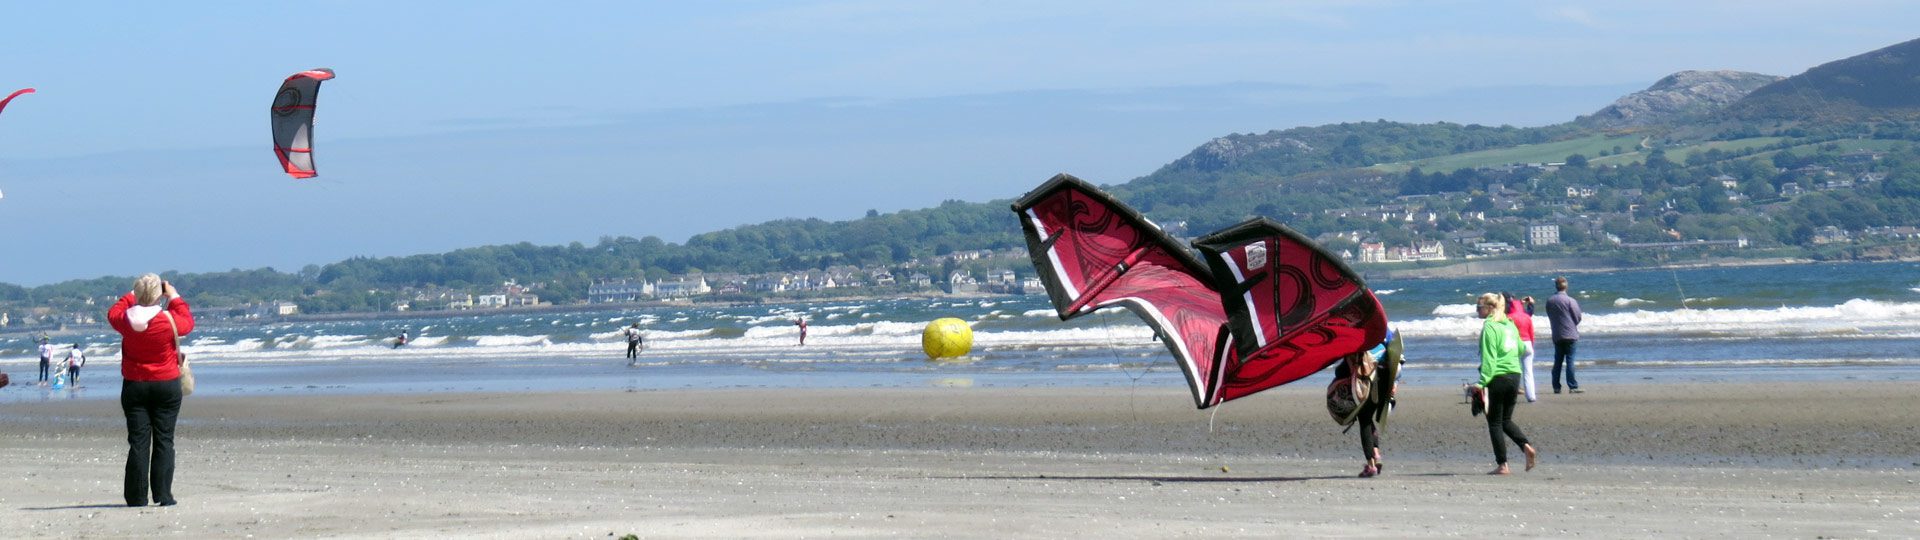 Dublin Battle of the Bay kites